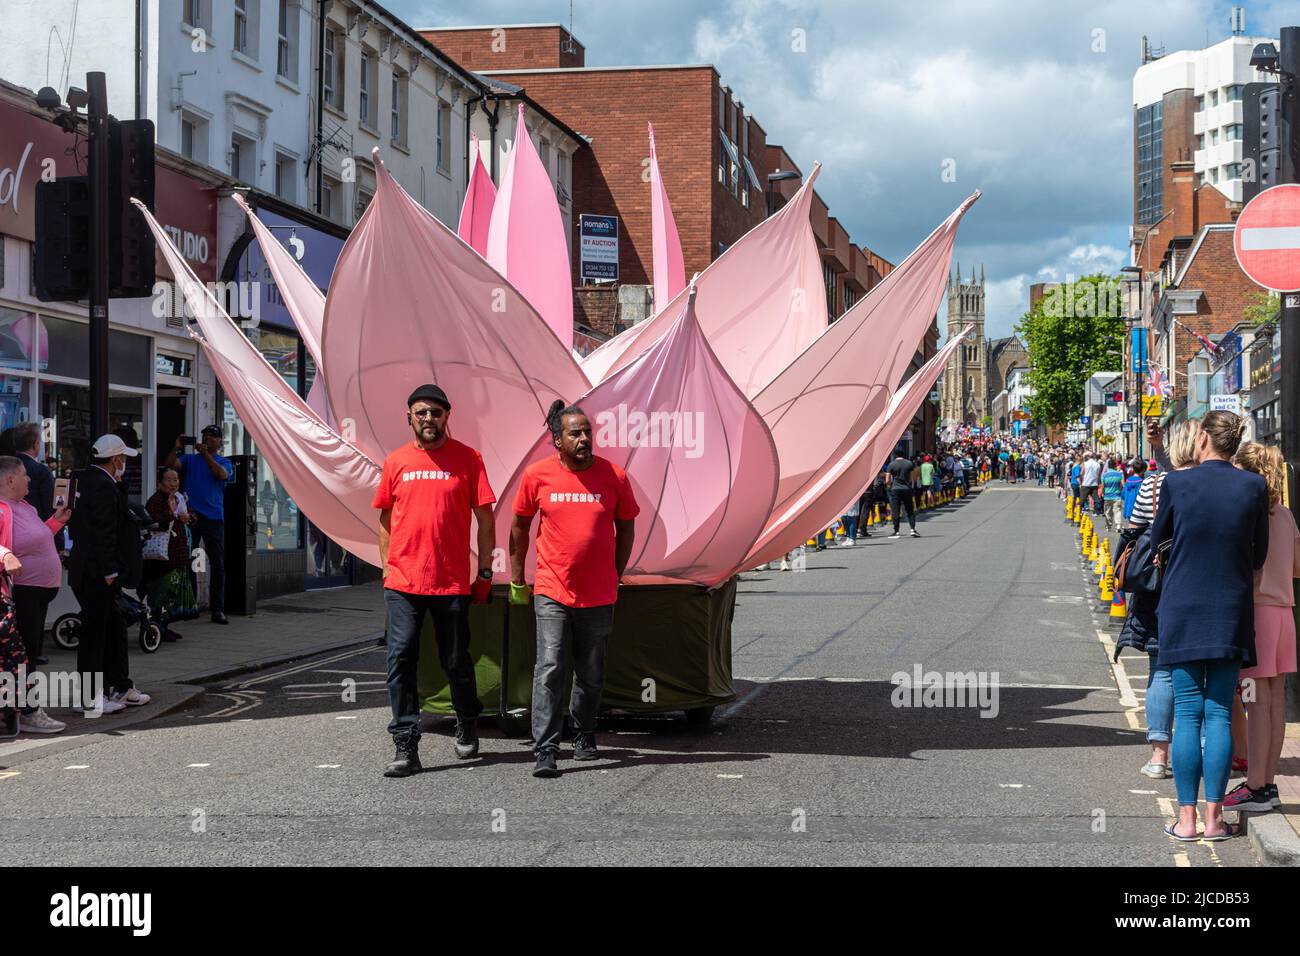 Le Grand Parade à la fête de Victoria, un événement annuel à Aldershot, Hampshire, Angleterre, Royaume-Uni. Nutkhut artistes avec une fleur de lotus géante Banque D'Images